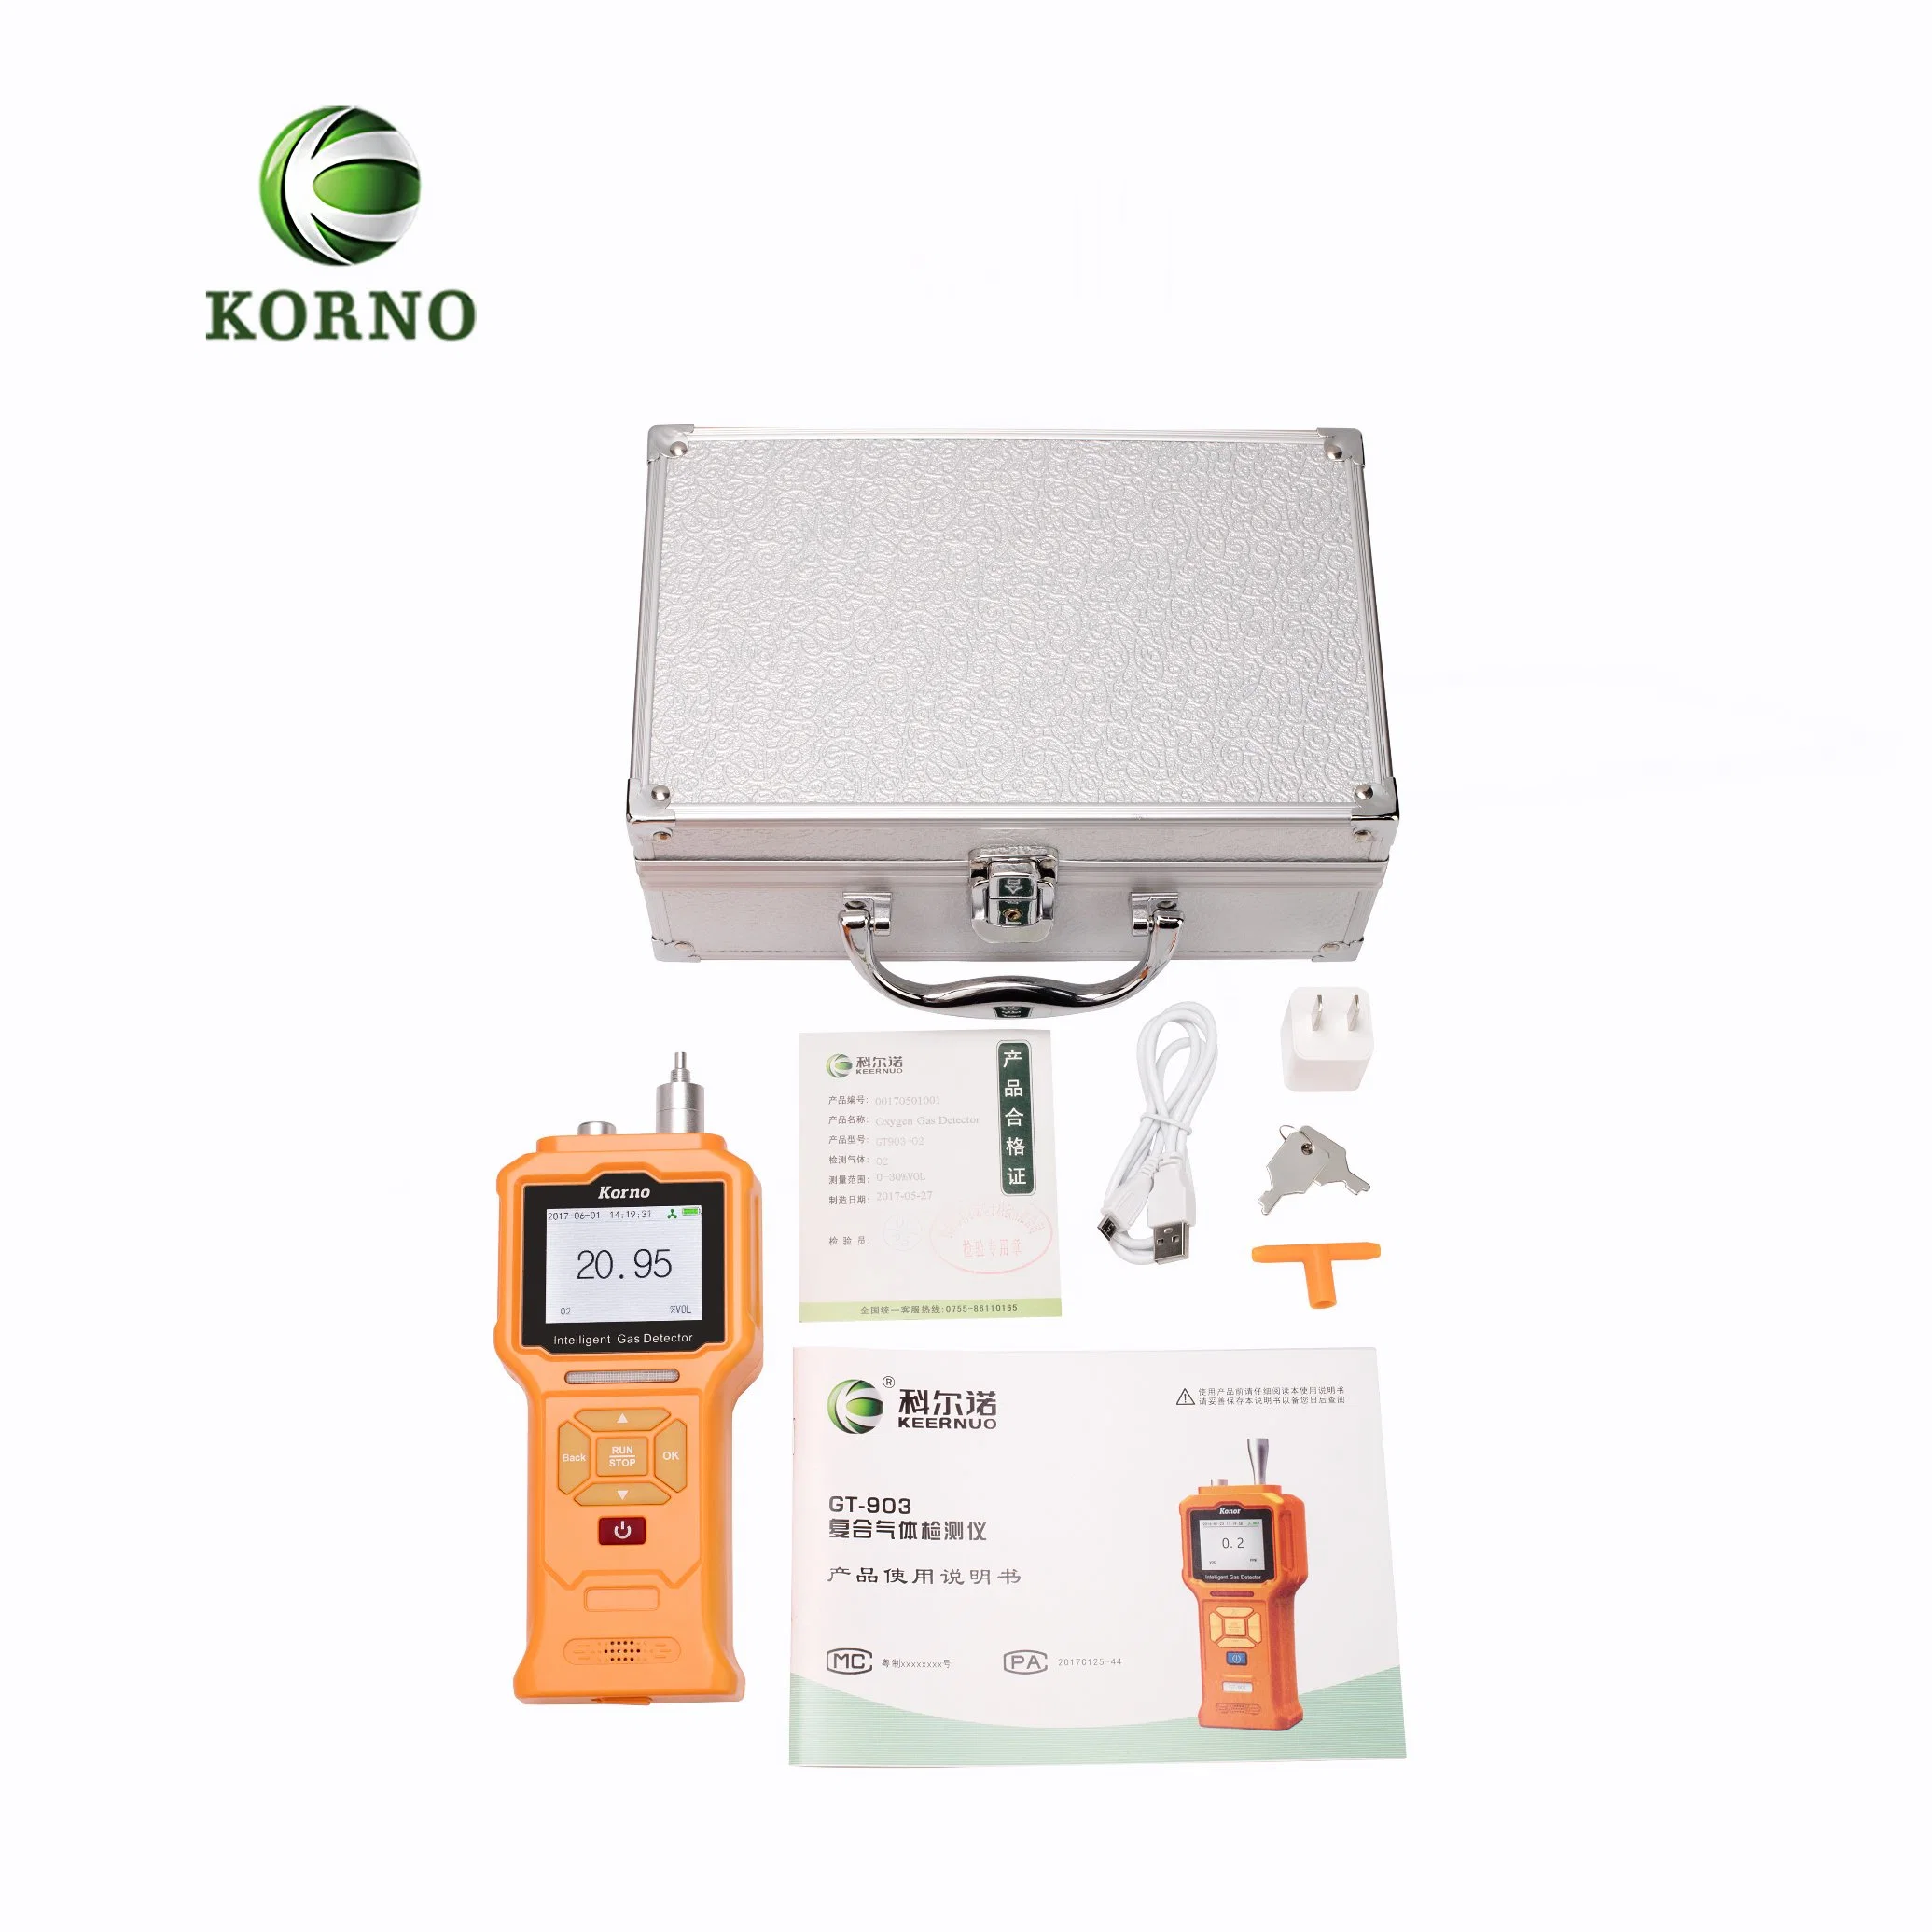 Formaldehyd-Alarm für die Überwachung der Luftqualität im Auto (CH2O)